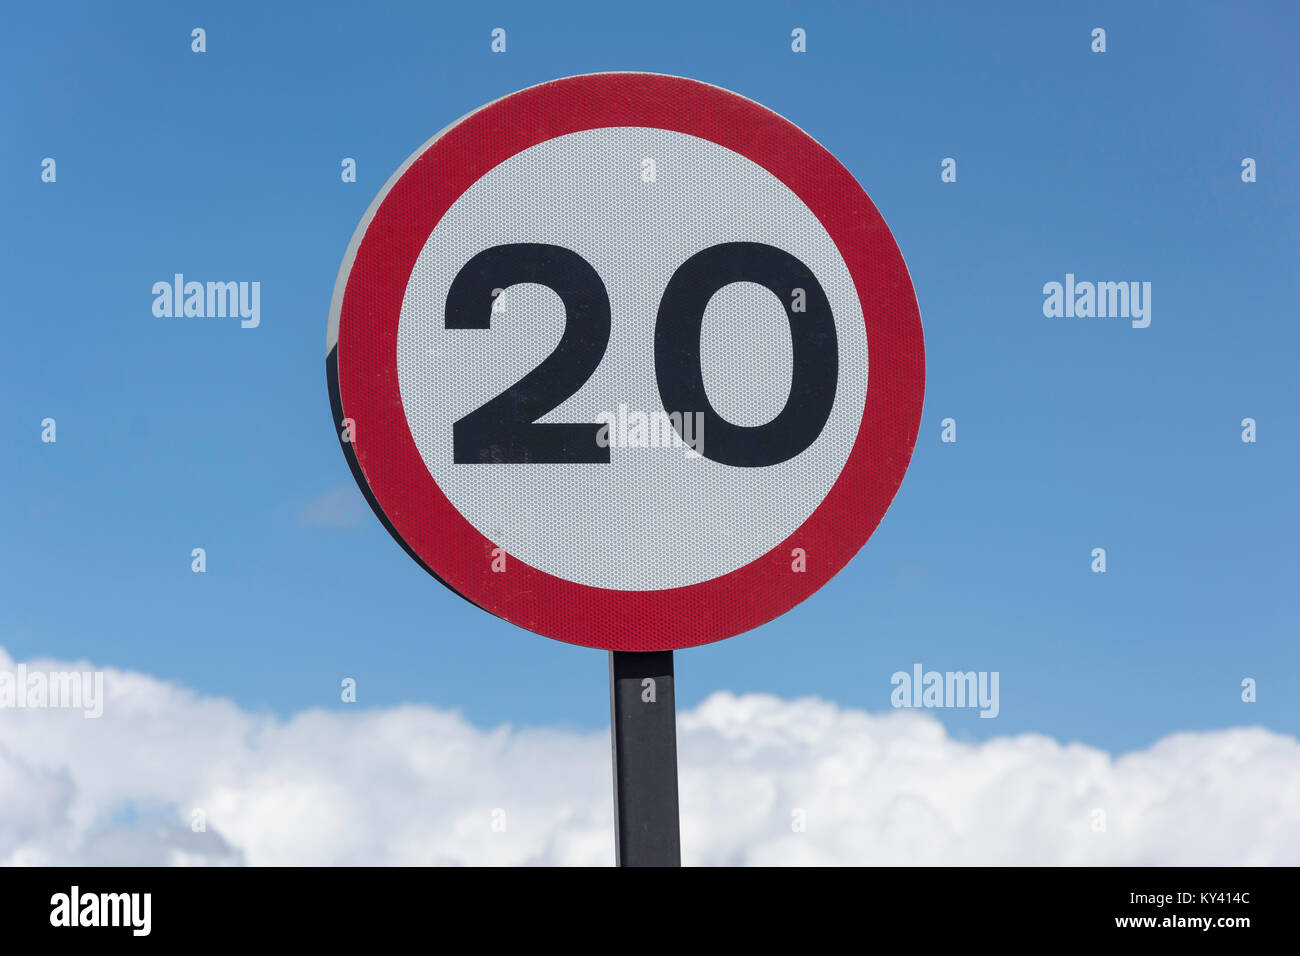 20mph signe de la circulation en zone résidentielle, Arundel Drive West, Saltdean, East Sussex, Angleterre, Royaume-Uni Banque D'Images